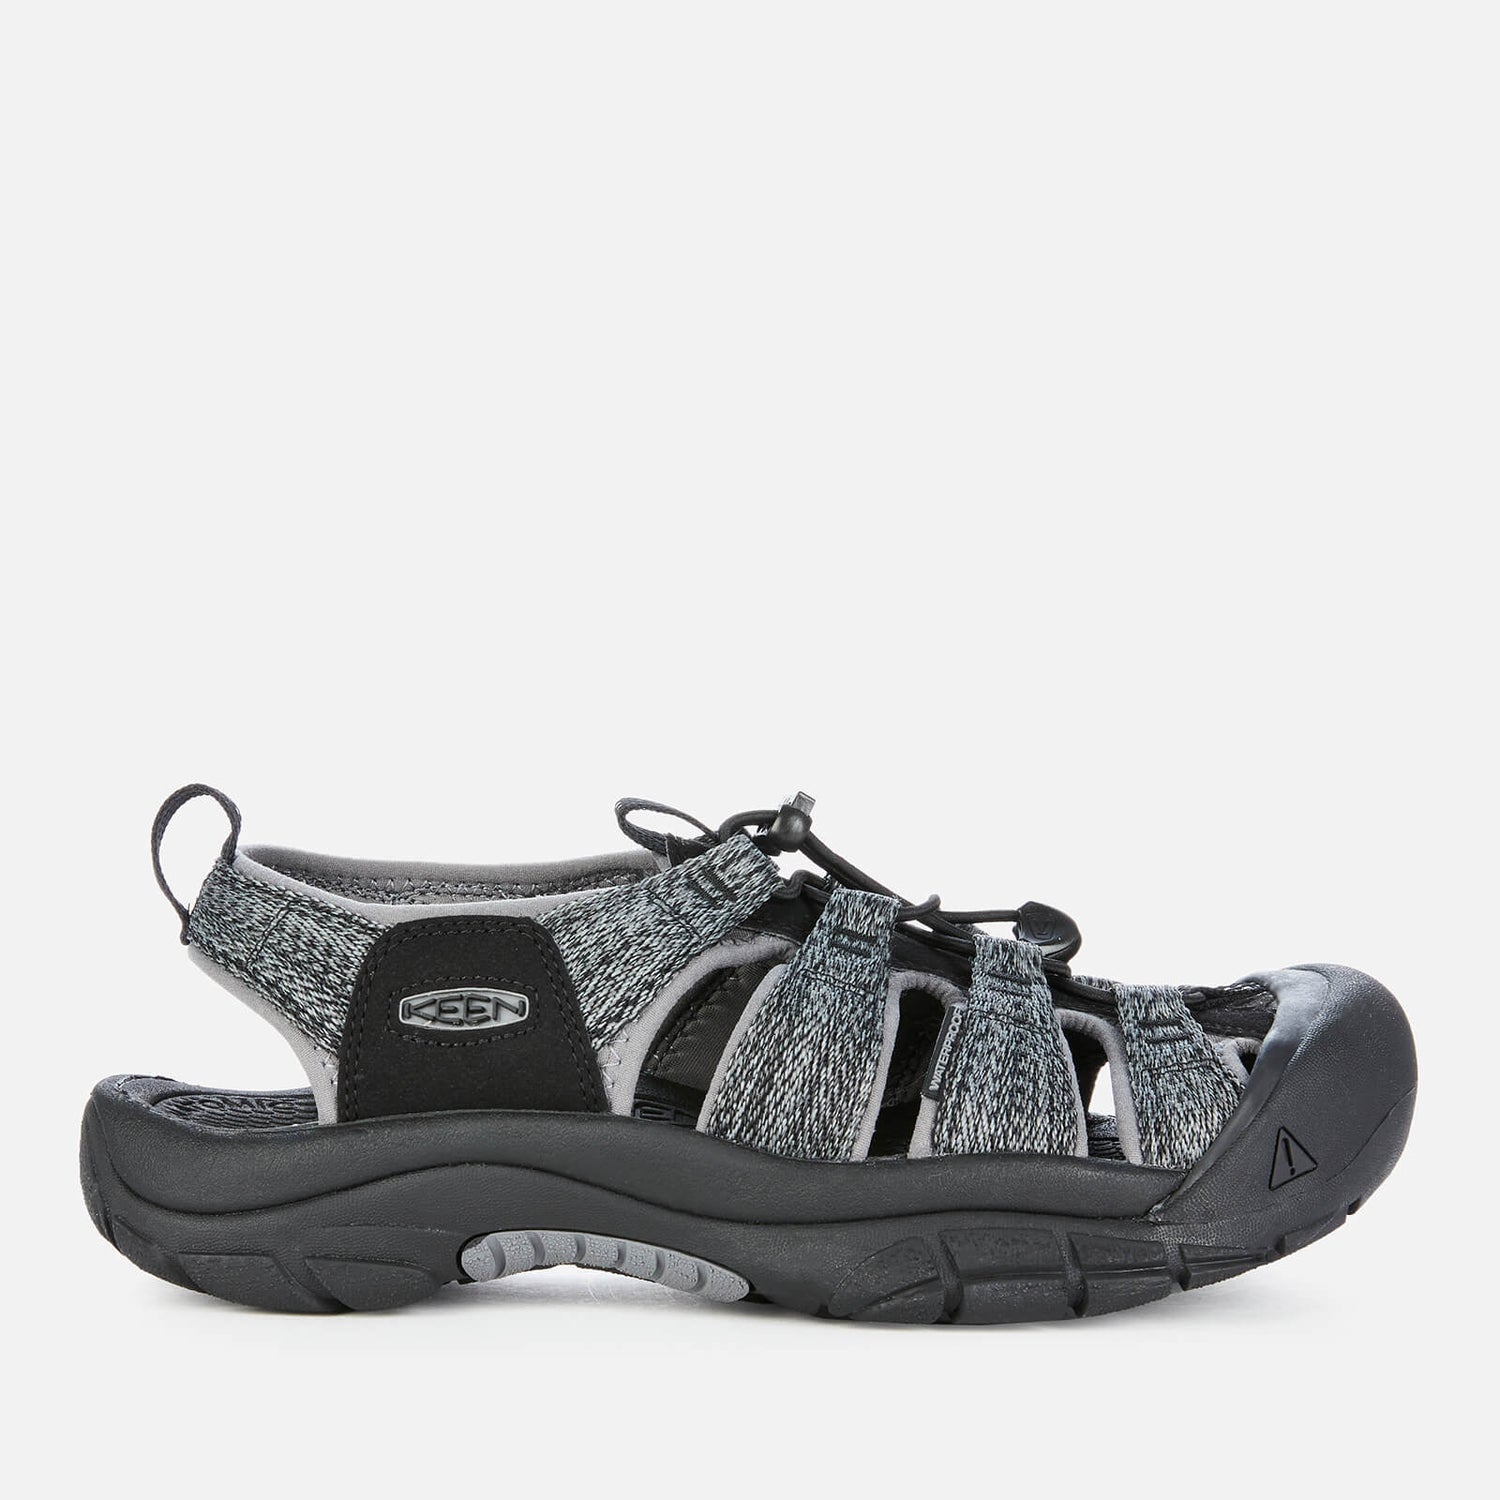 Keen Men's Newport H2 Sandals - Black/Steel Grey